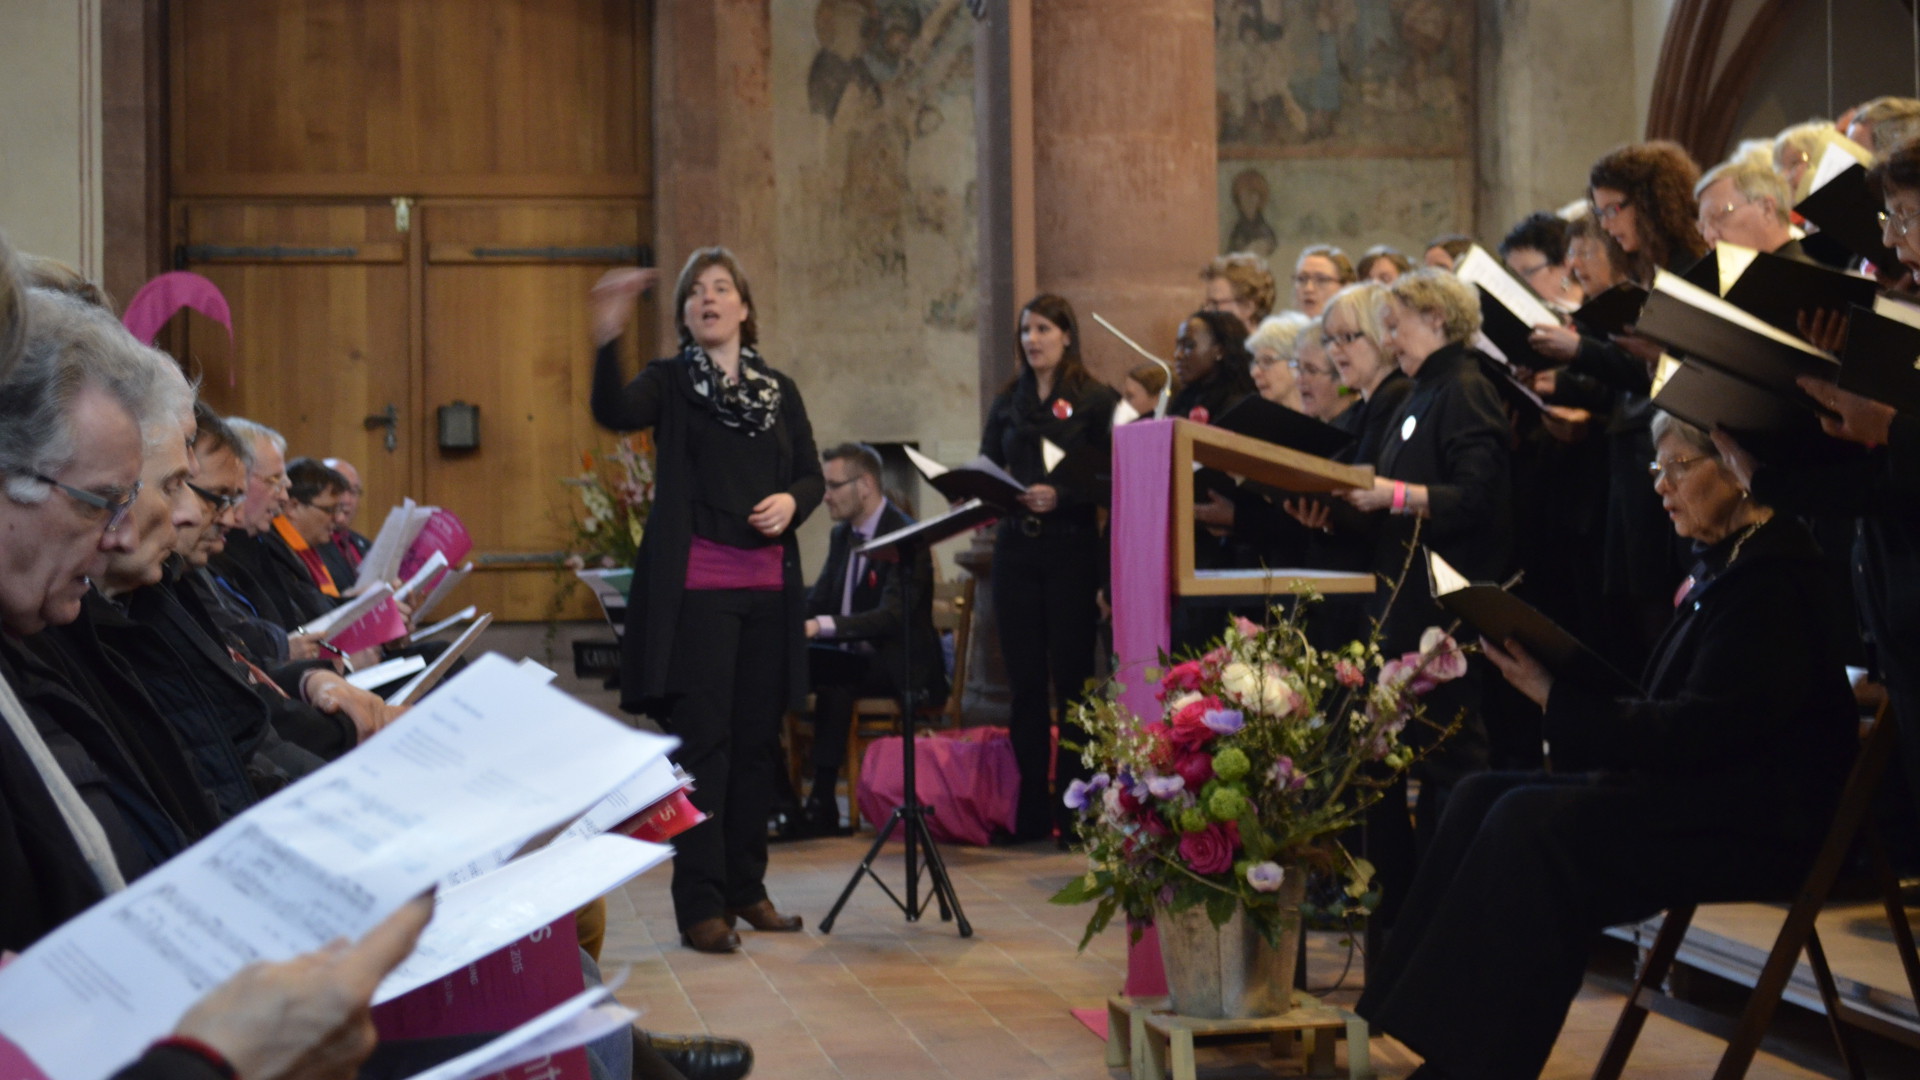 Cantars-Leiterin Sandra Rupp dirigiert Chor und Publikum am Festakt von Cantars 2015.